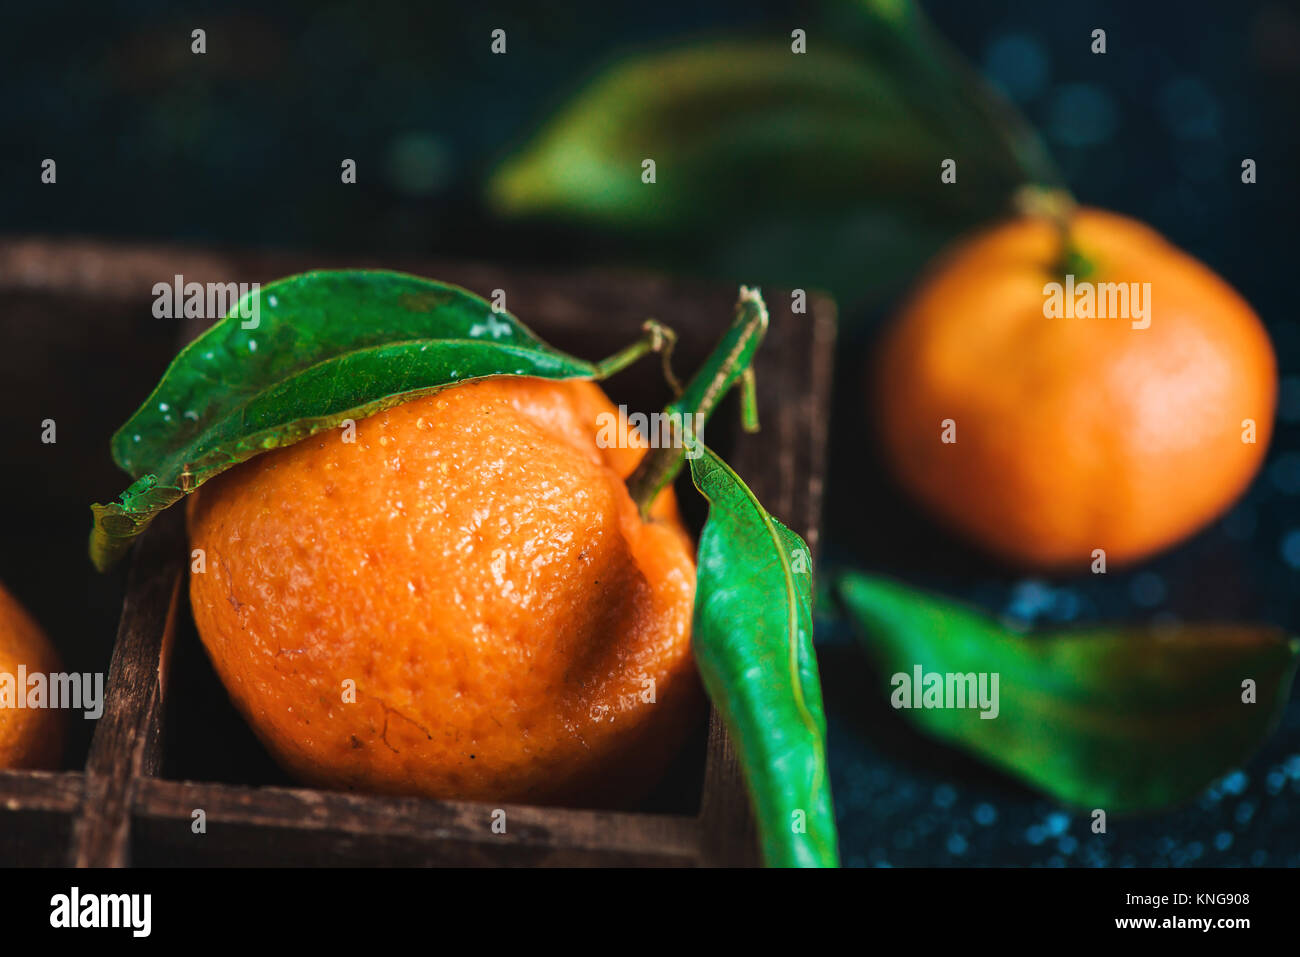 Close-up di mandarini in una cassa di legno su uno sfondo scuro. Gocce di acqua su una superficie. Dark fotografia alimentare con vibrante frutta di arancia e spazio di copia Foto Stock